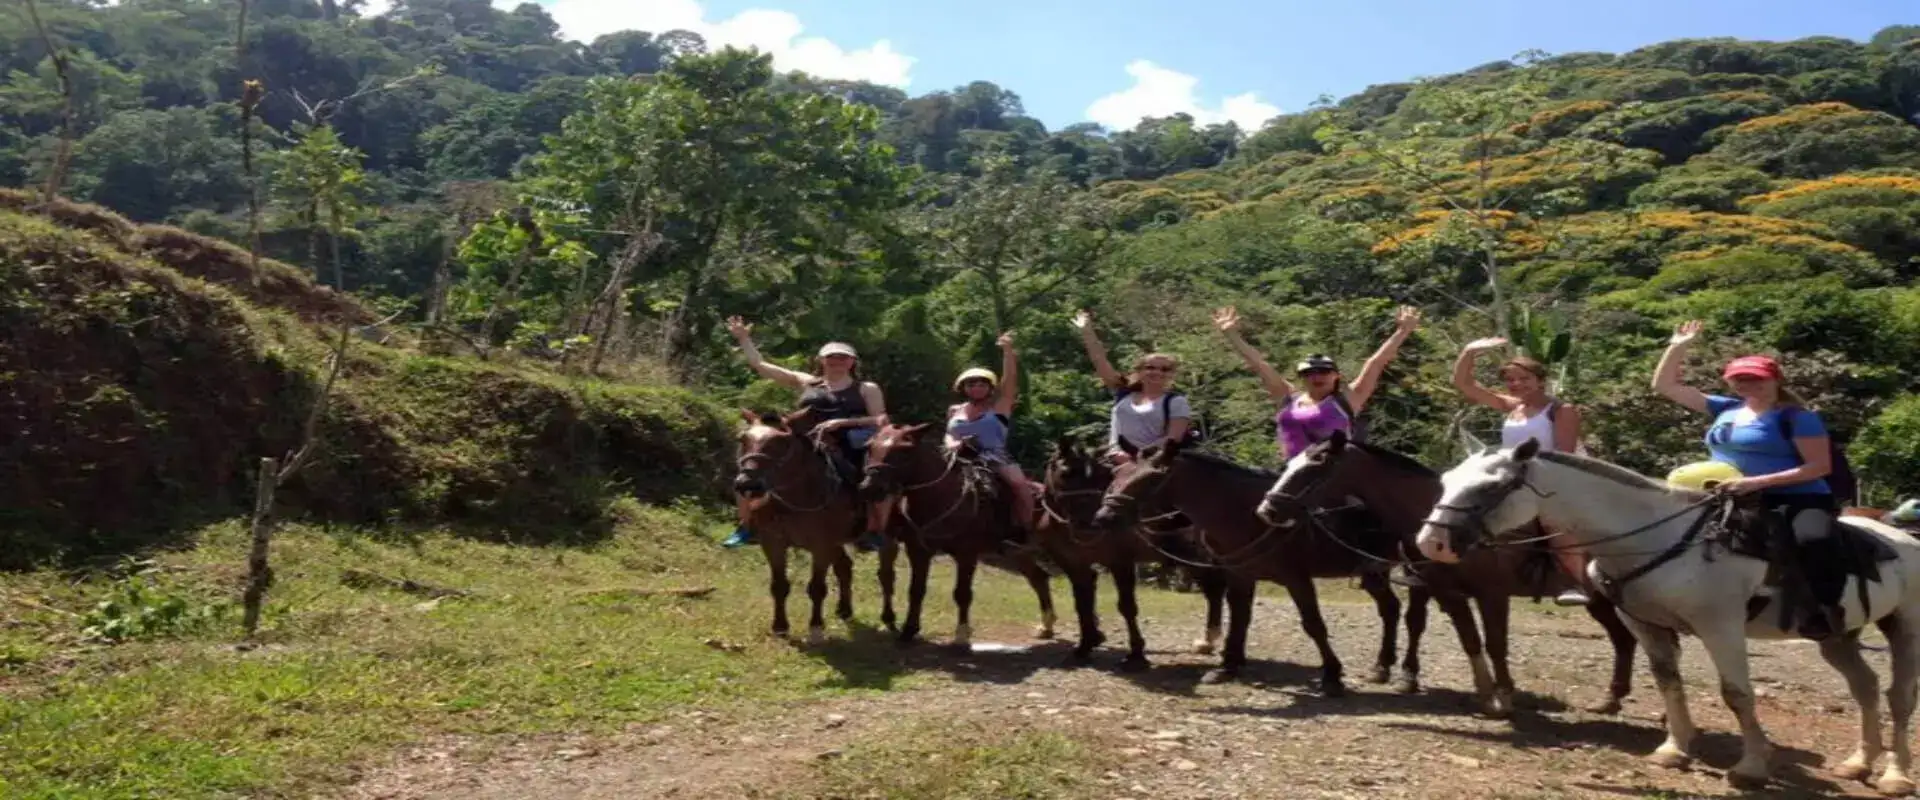 Horseback riding in Manuel Antonio | Costa Rica